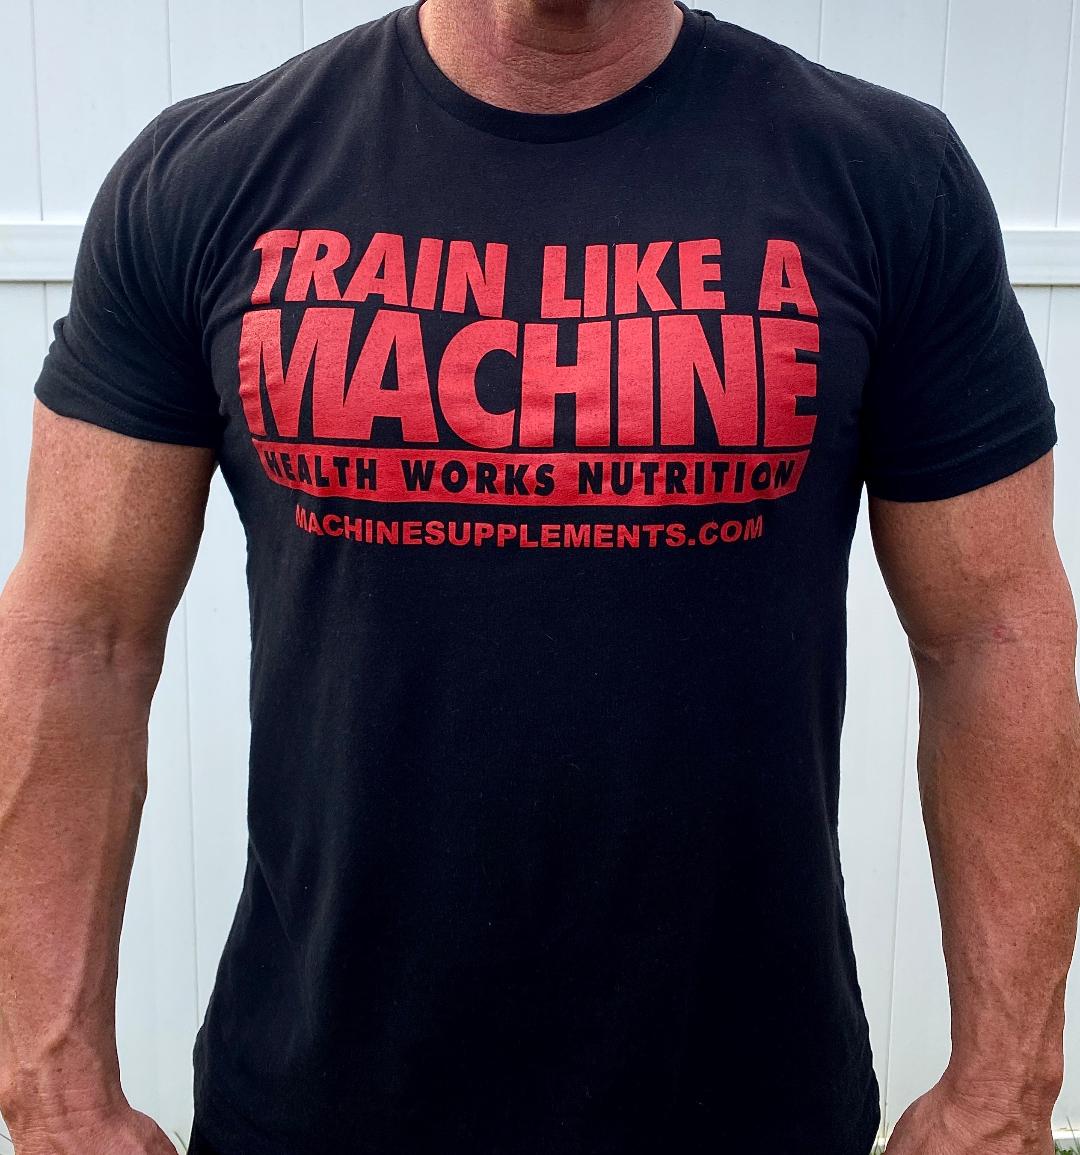 TRAIN LIKE A MACHINE tshirt Mens